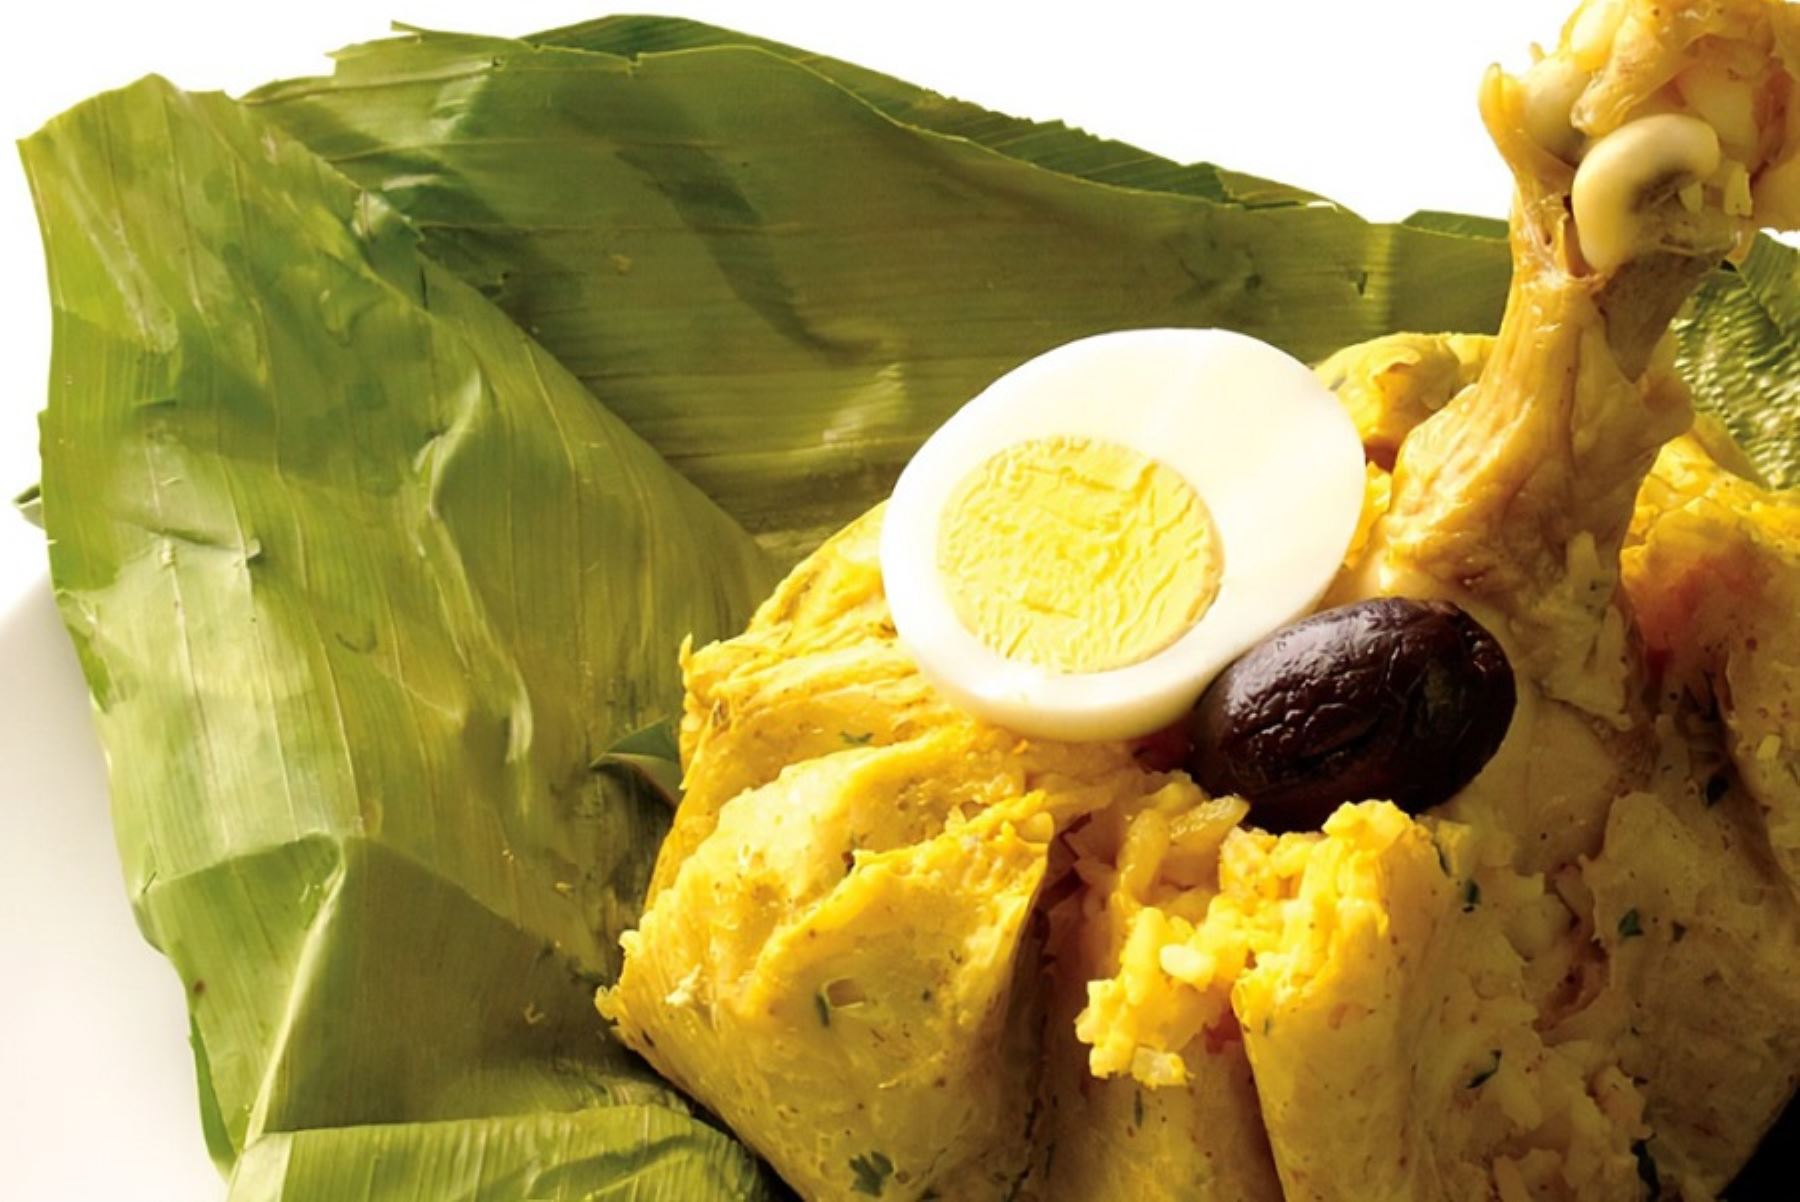 El juane es el embajador de la gastronomía amazónica peruana y se luce en todo su esplendor durante la celebración, el 24 de junio, de la Fiesta de San Juan, patrono de todas las regiones de la selva y una de las festividades más importantes del calendario turístico nacional.